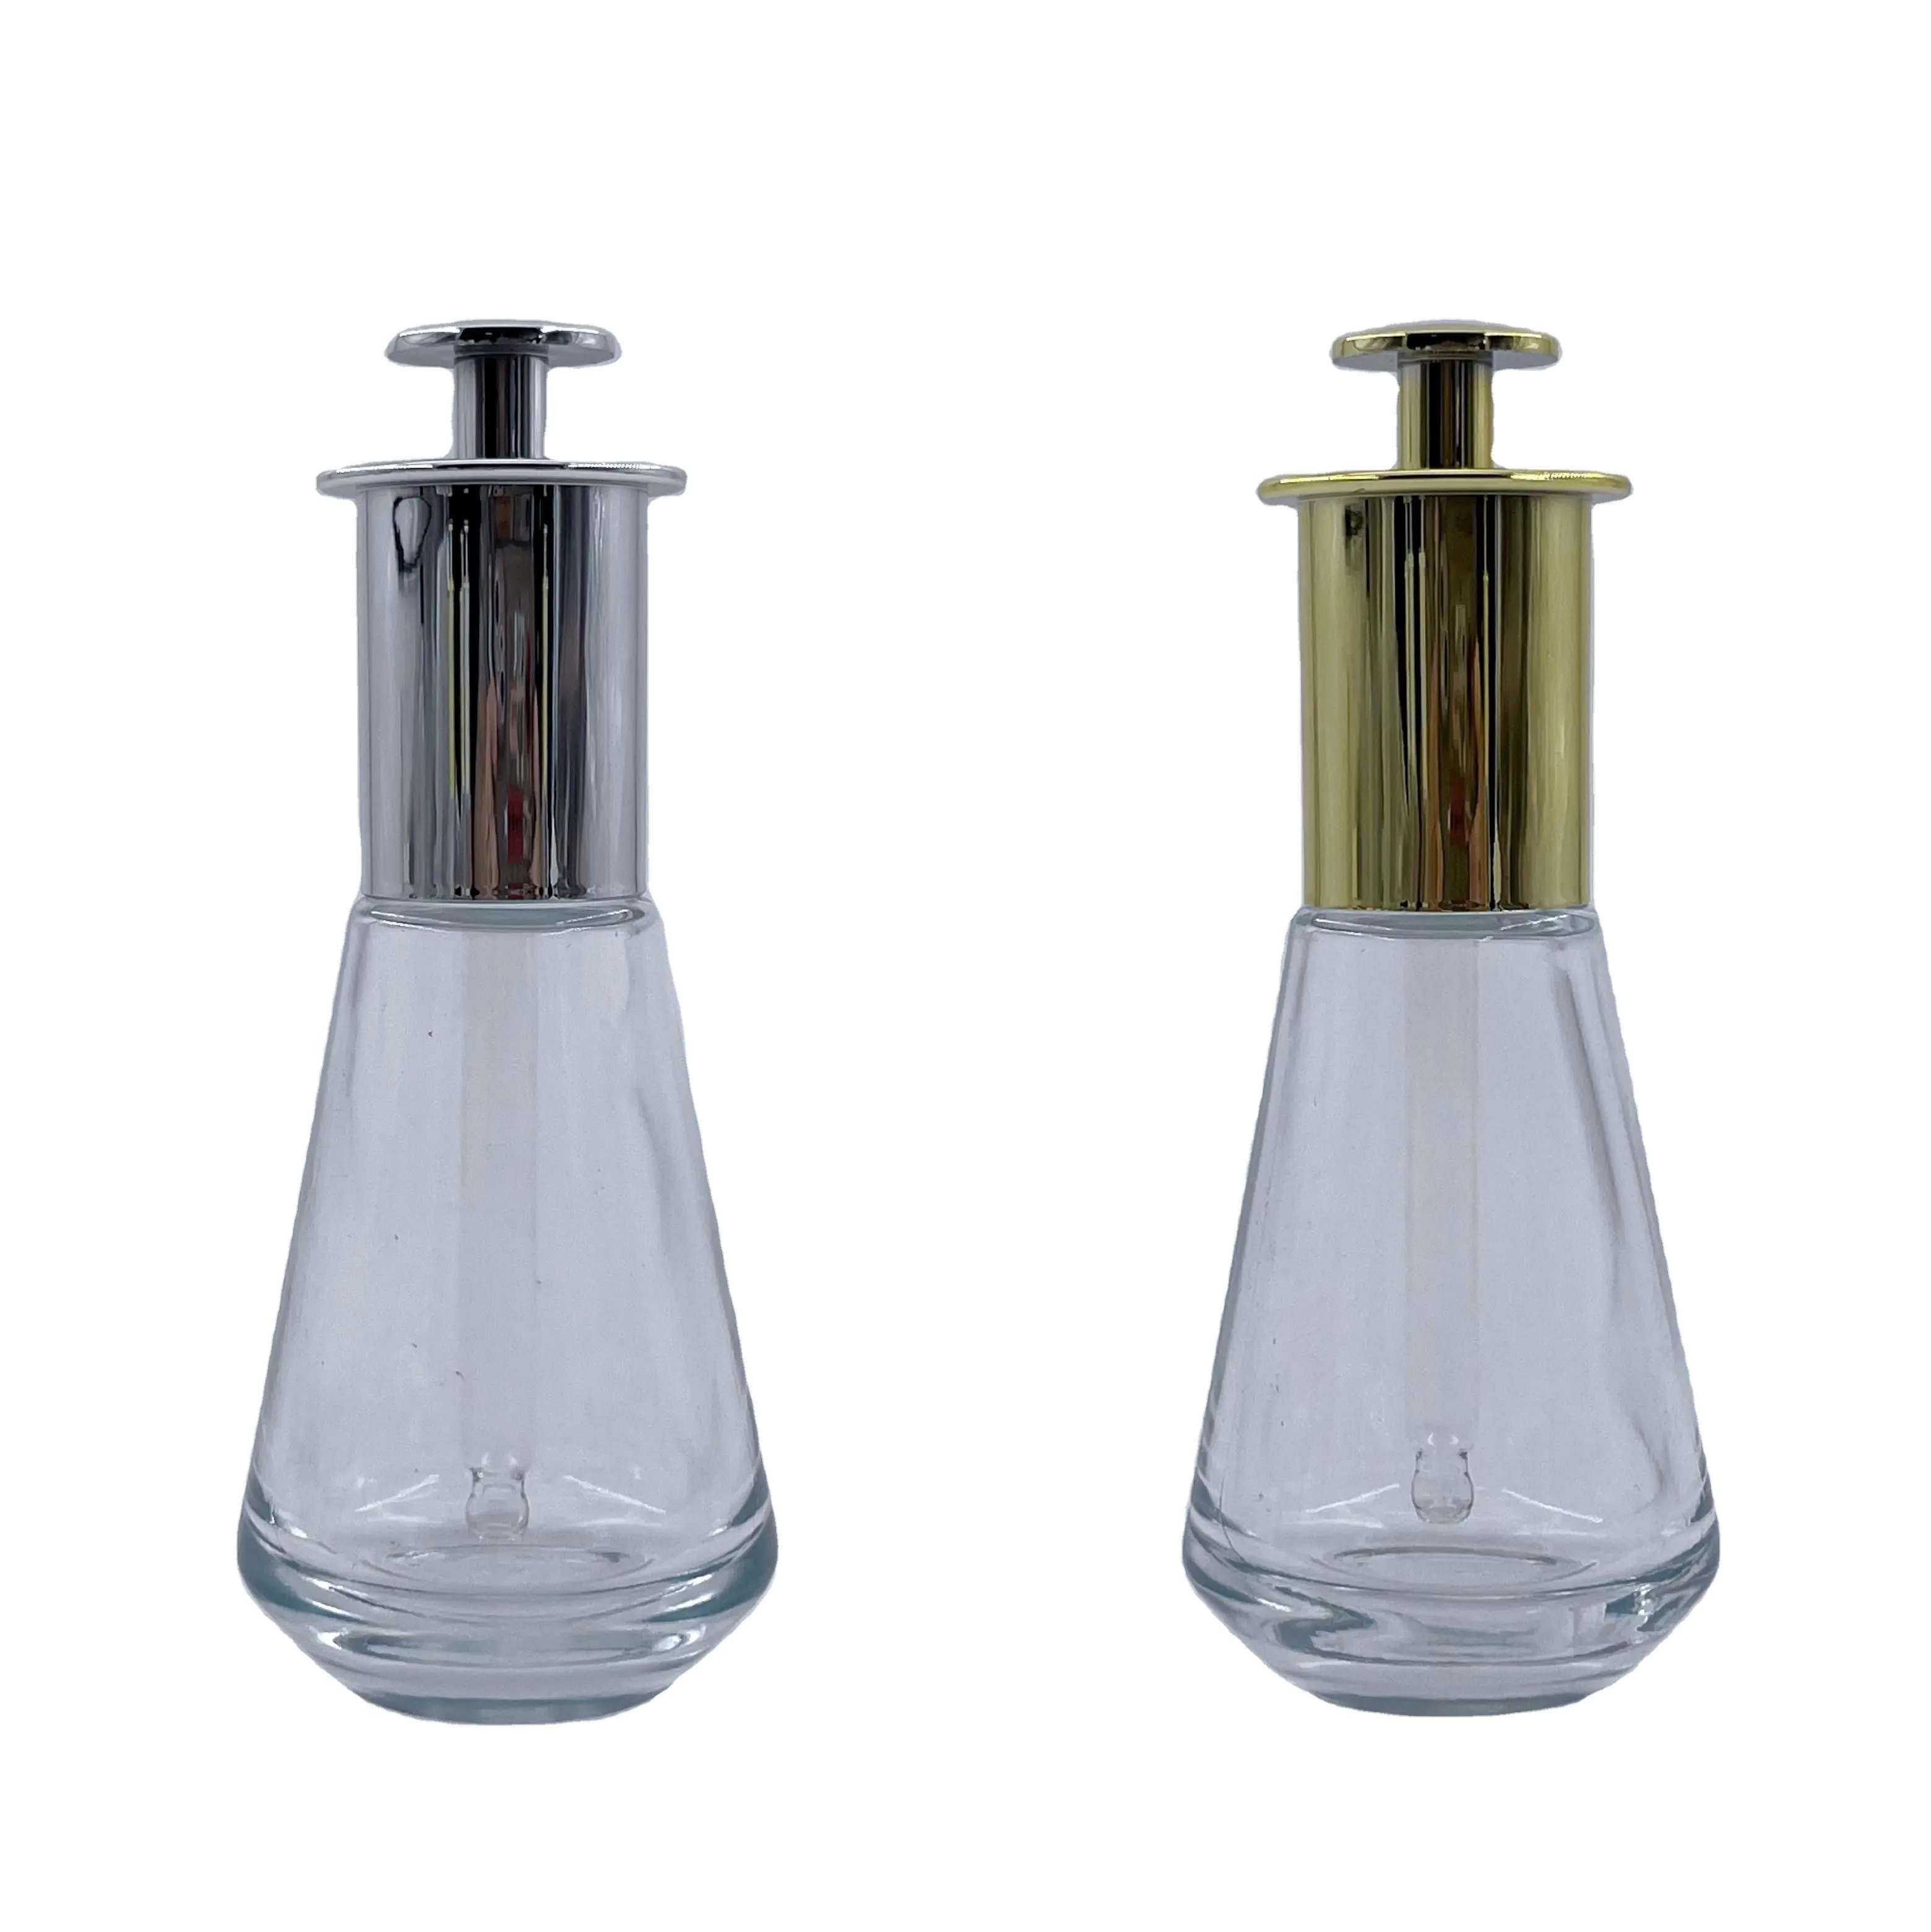 Горячая распродажа, новый дизайн, 45 мл, стеклянная бутылка для эфирного масла с золотыми алюминиевыми капельницами